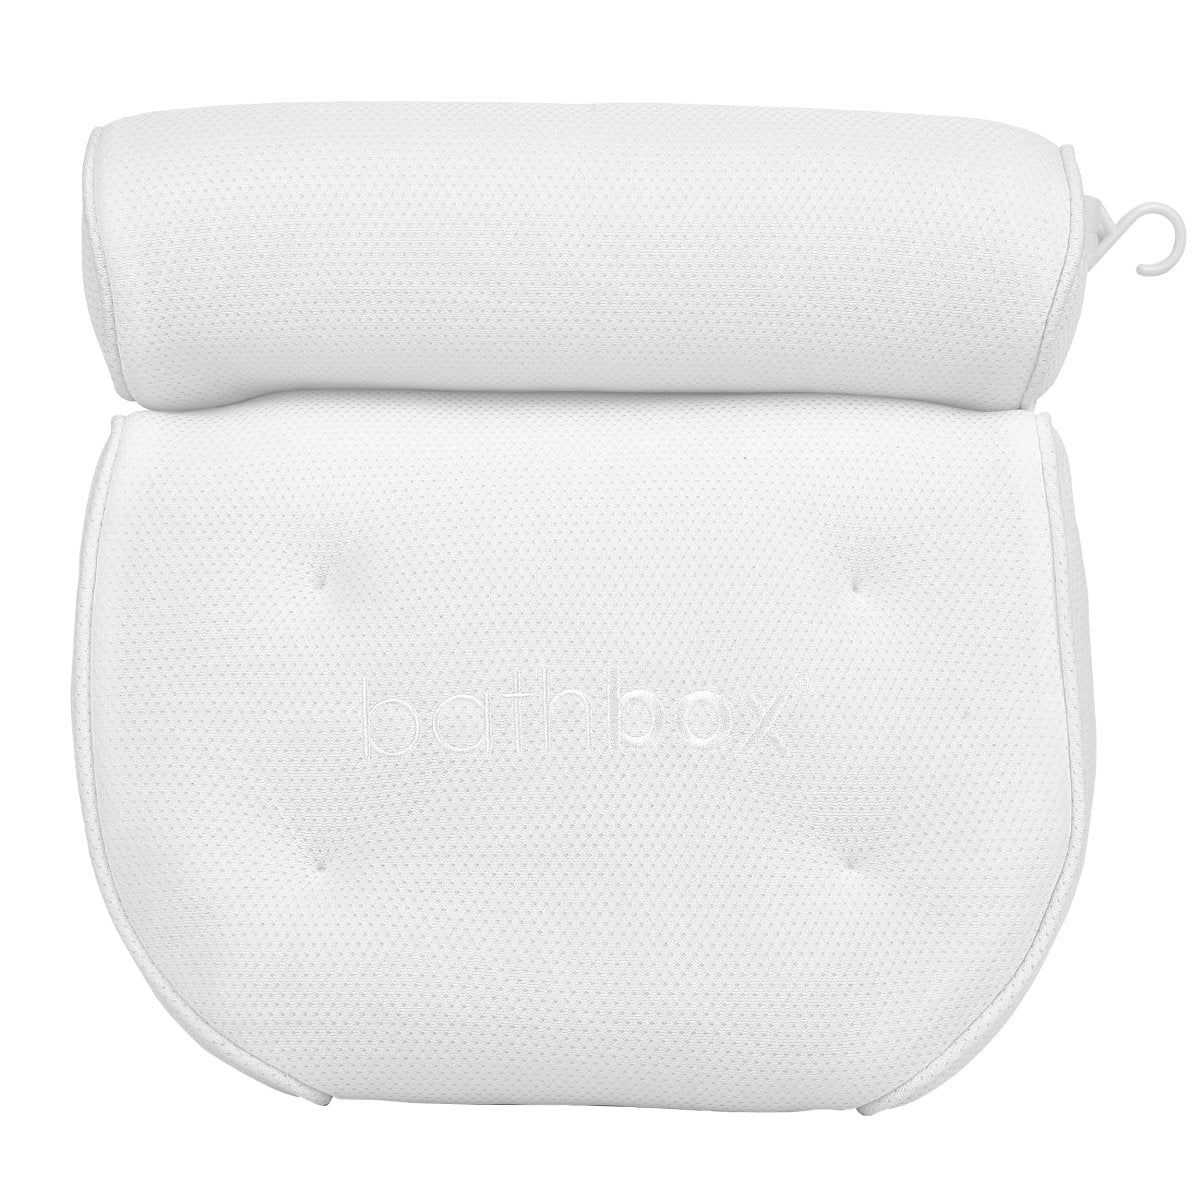 Bath Pillow & Bath Caddy Bundle - Gift Set With Bathtub Cushion Support & Tray Stand - Bath Box Australia